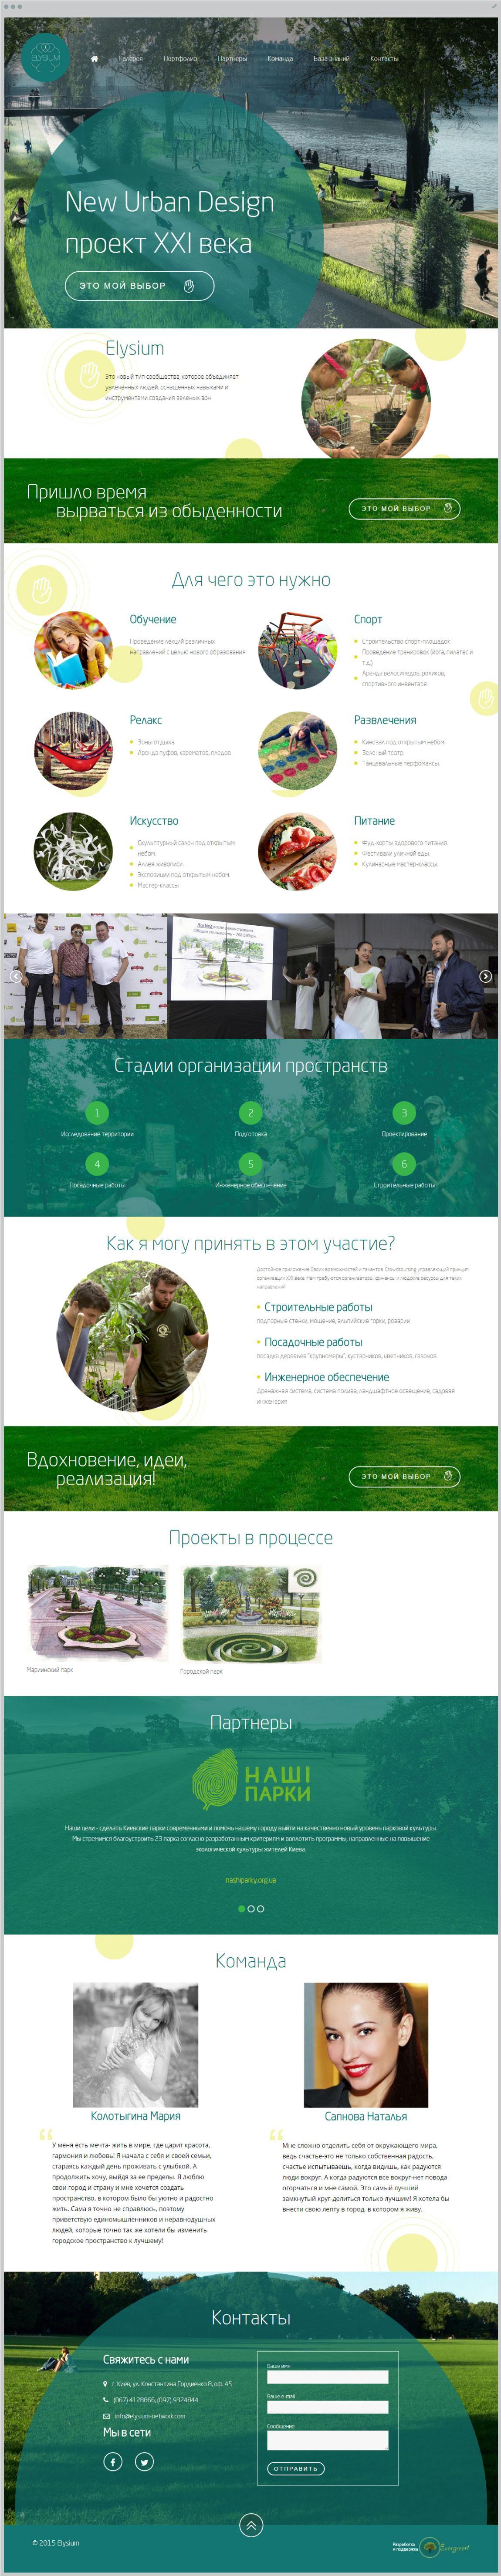 лендинг социального проекта по созданию зеленых зон | проекты Evergreen 7